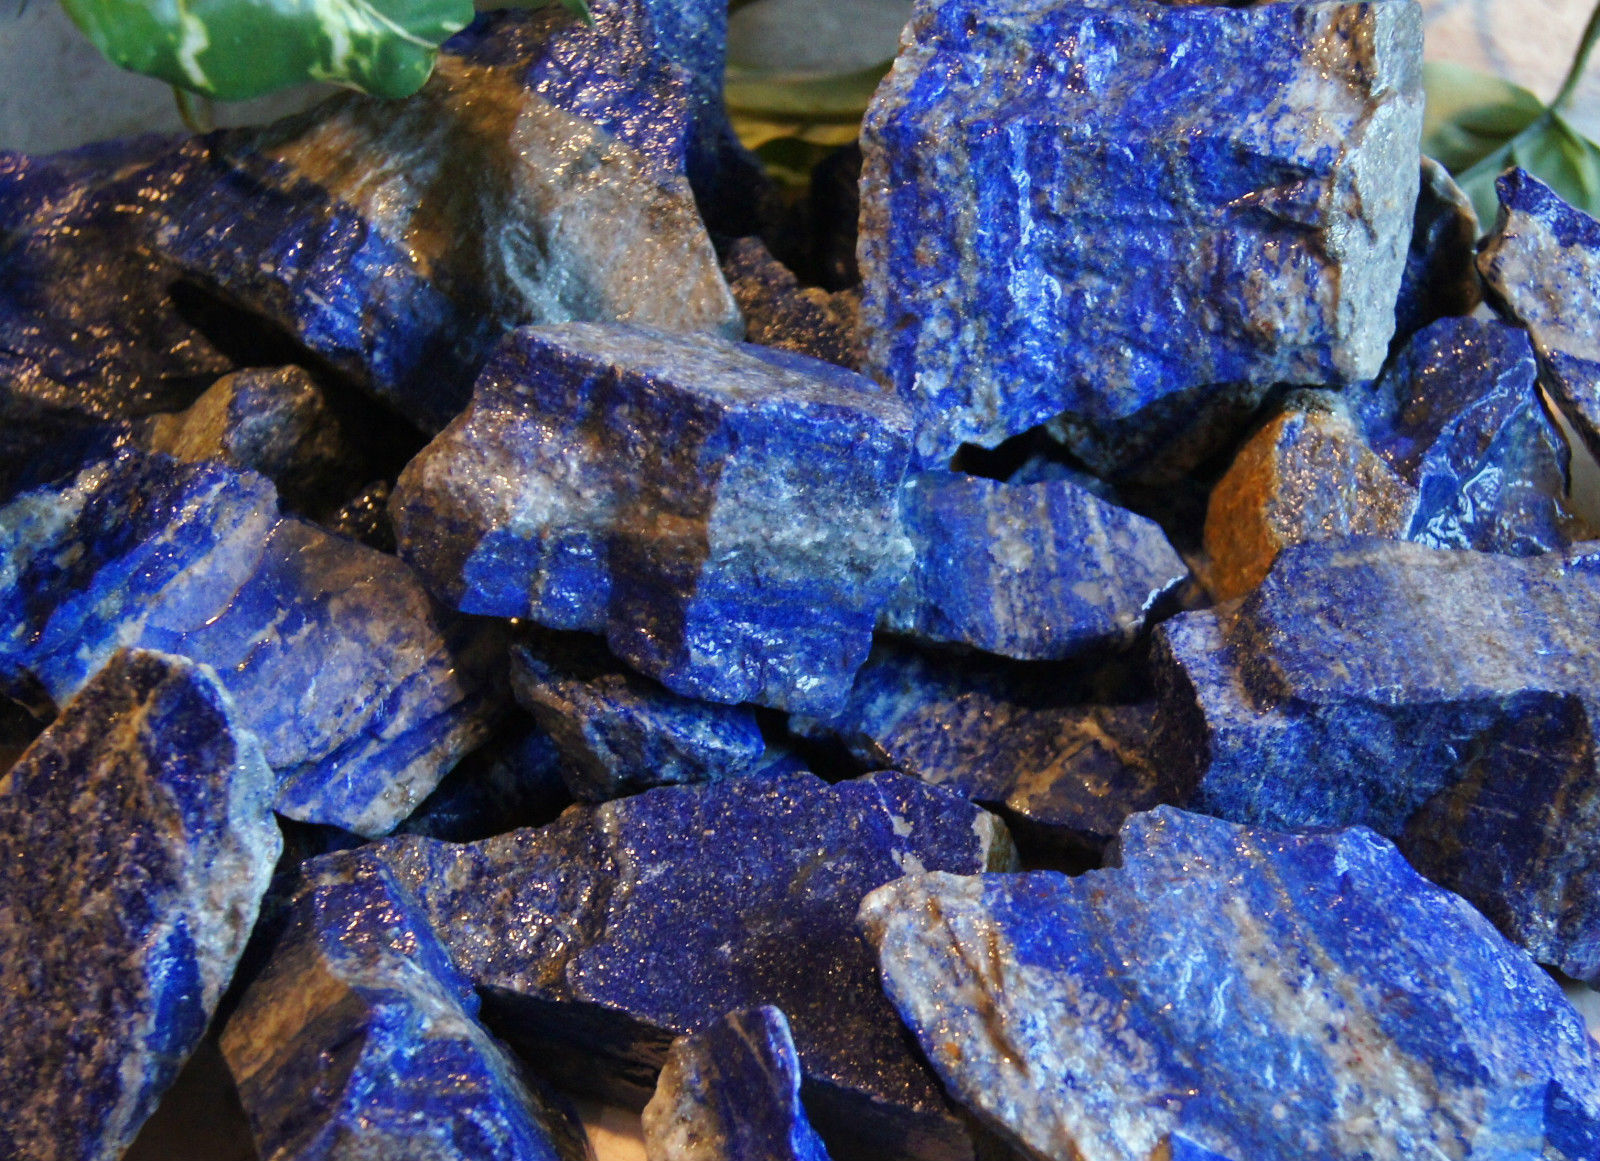 Lapis lazuli 1/2 LB Lot Gemstones Minerals Specimens Cabbing Rough Lapidary rock